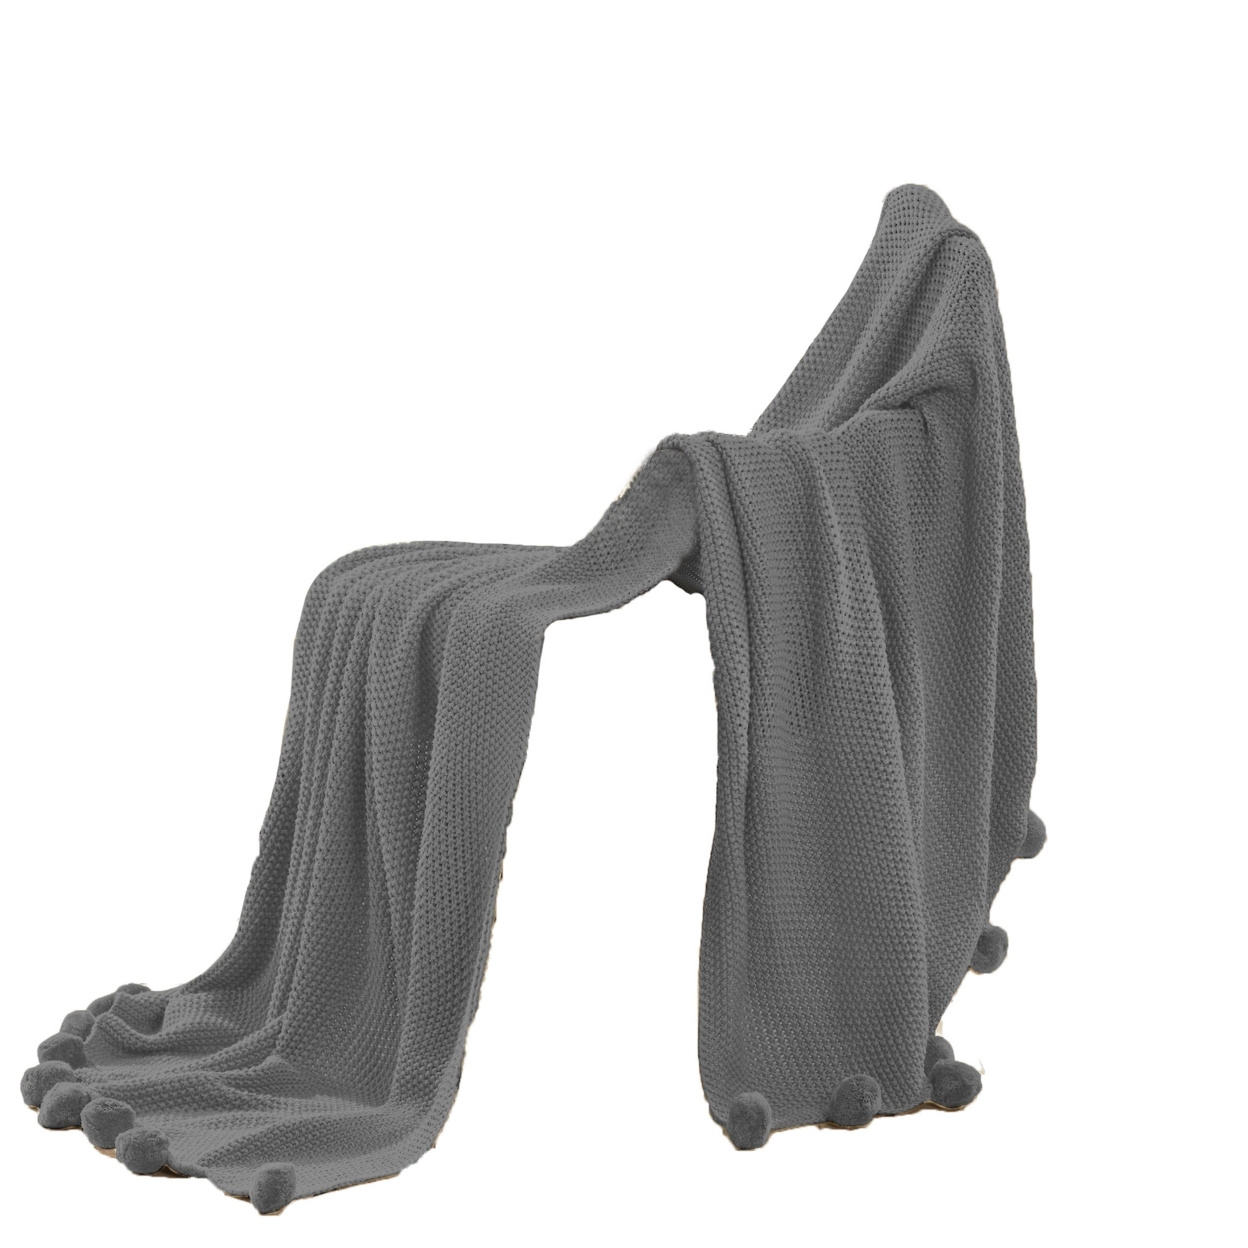 Nick 50 X 70 Soft Throw Blanket, Acrylic Knit, Pom Pom Accents, Stone Gray- Saltoro Sherpi